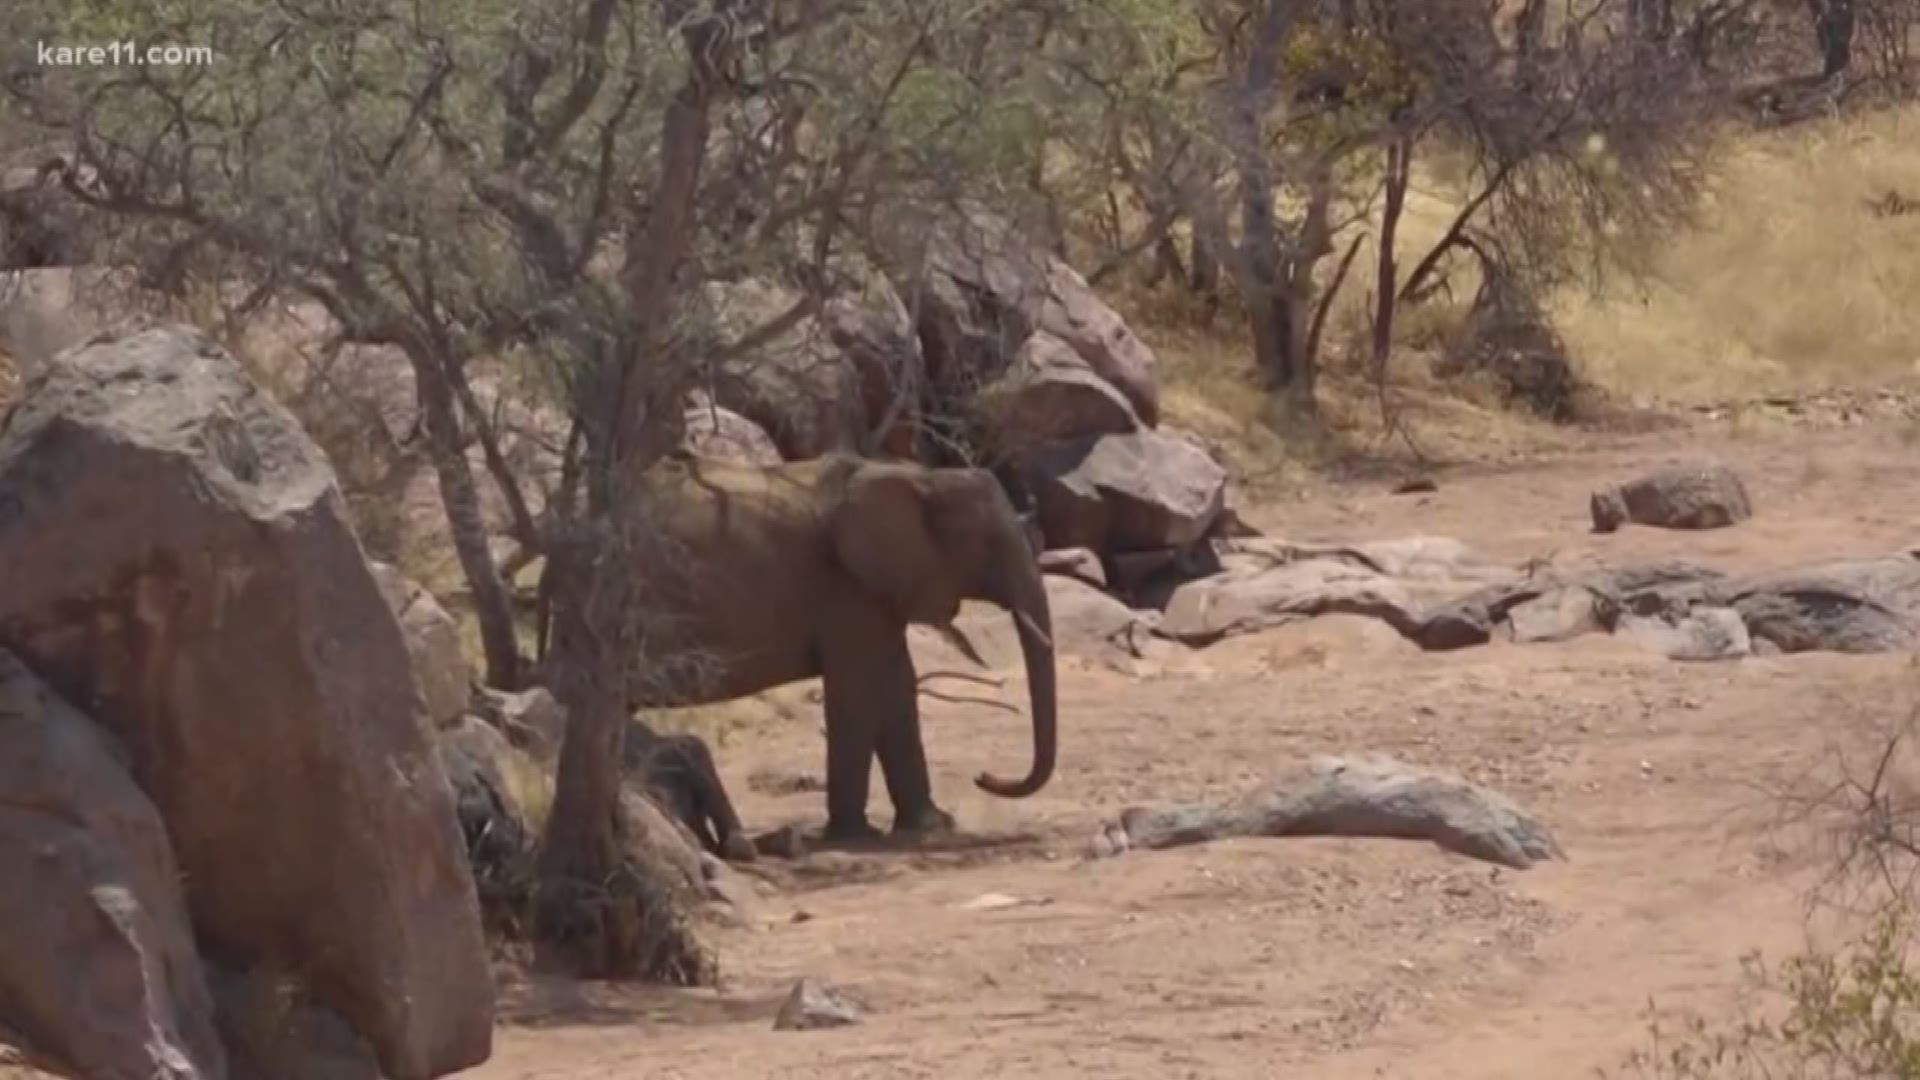 Sven Sundgaard is in Namibia tracking elephants using their...poop?